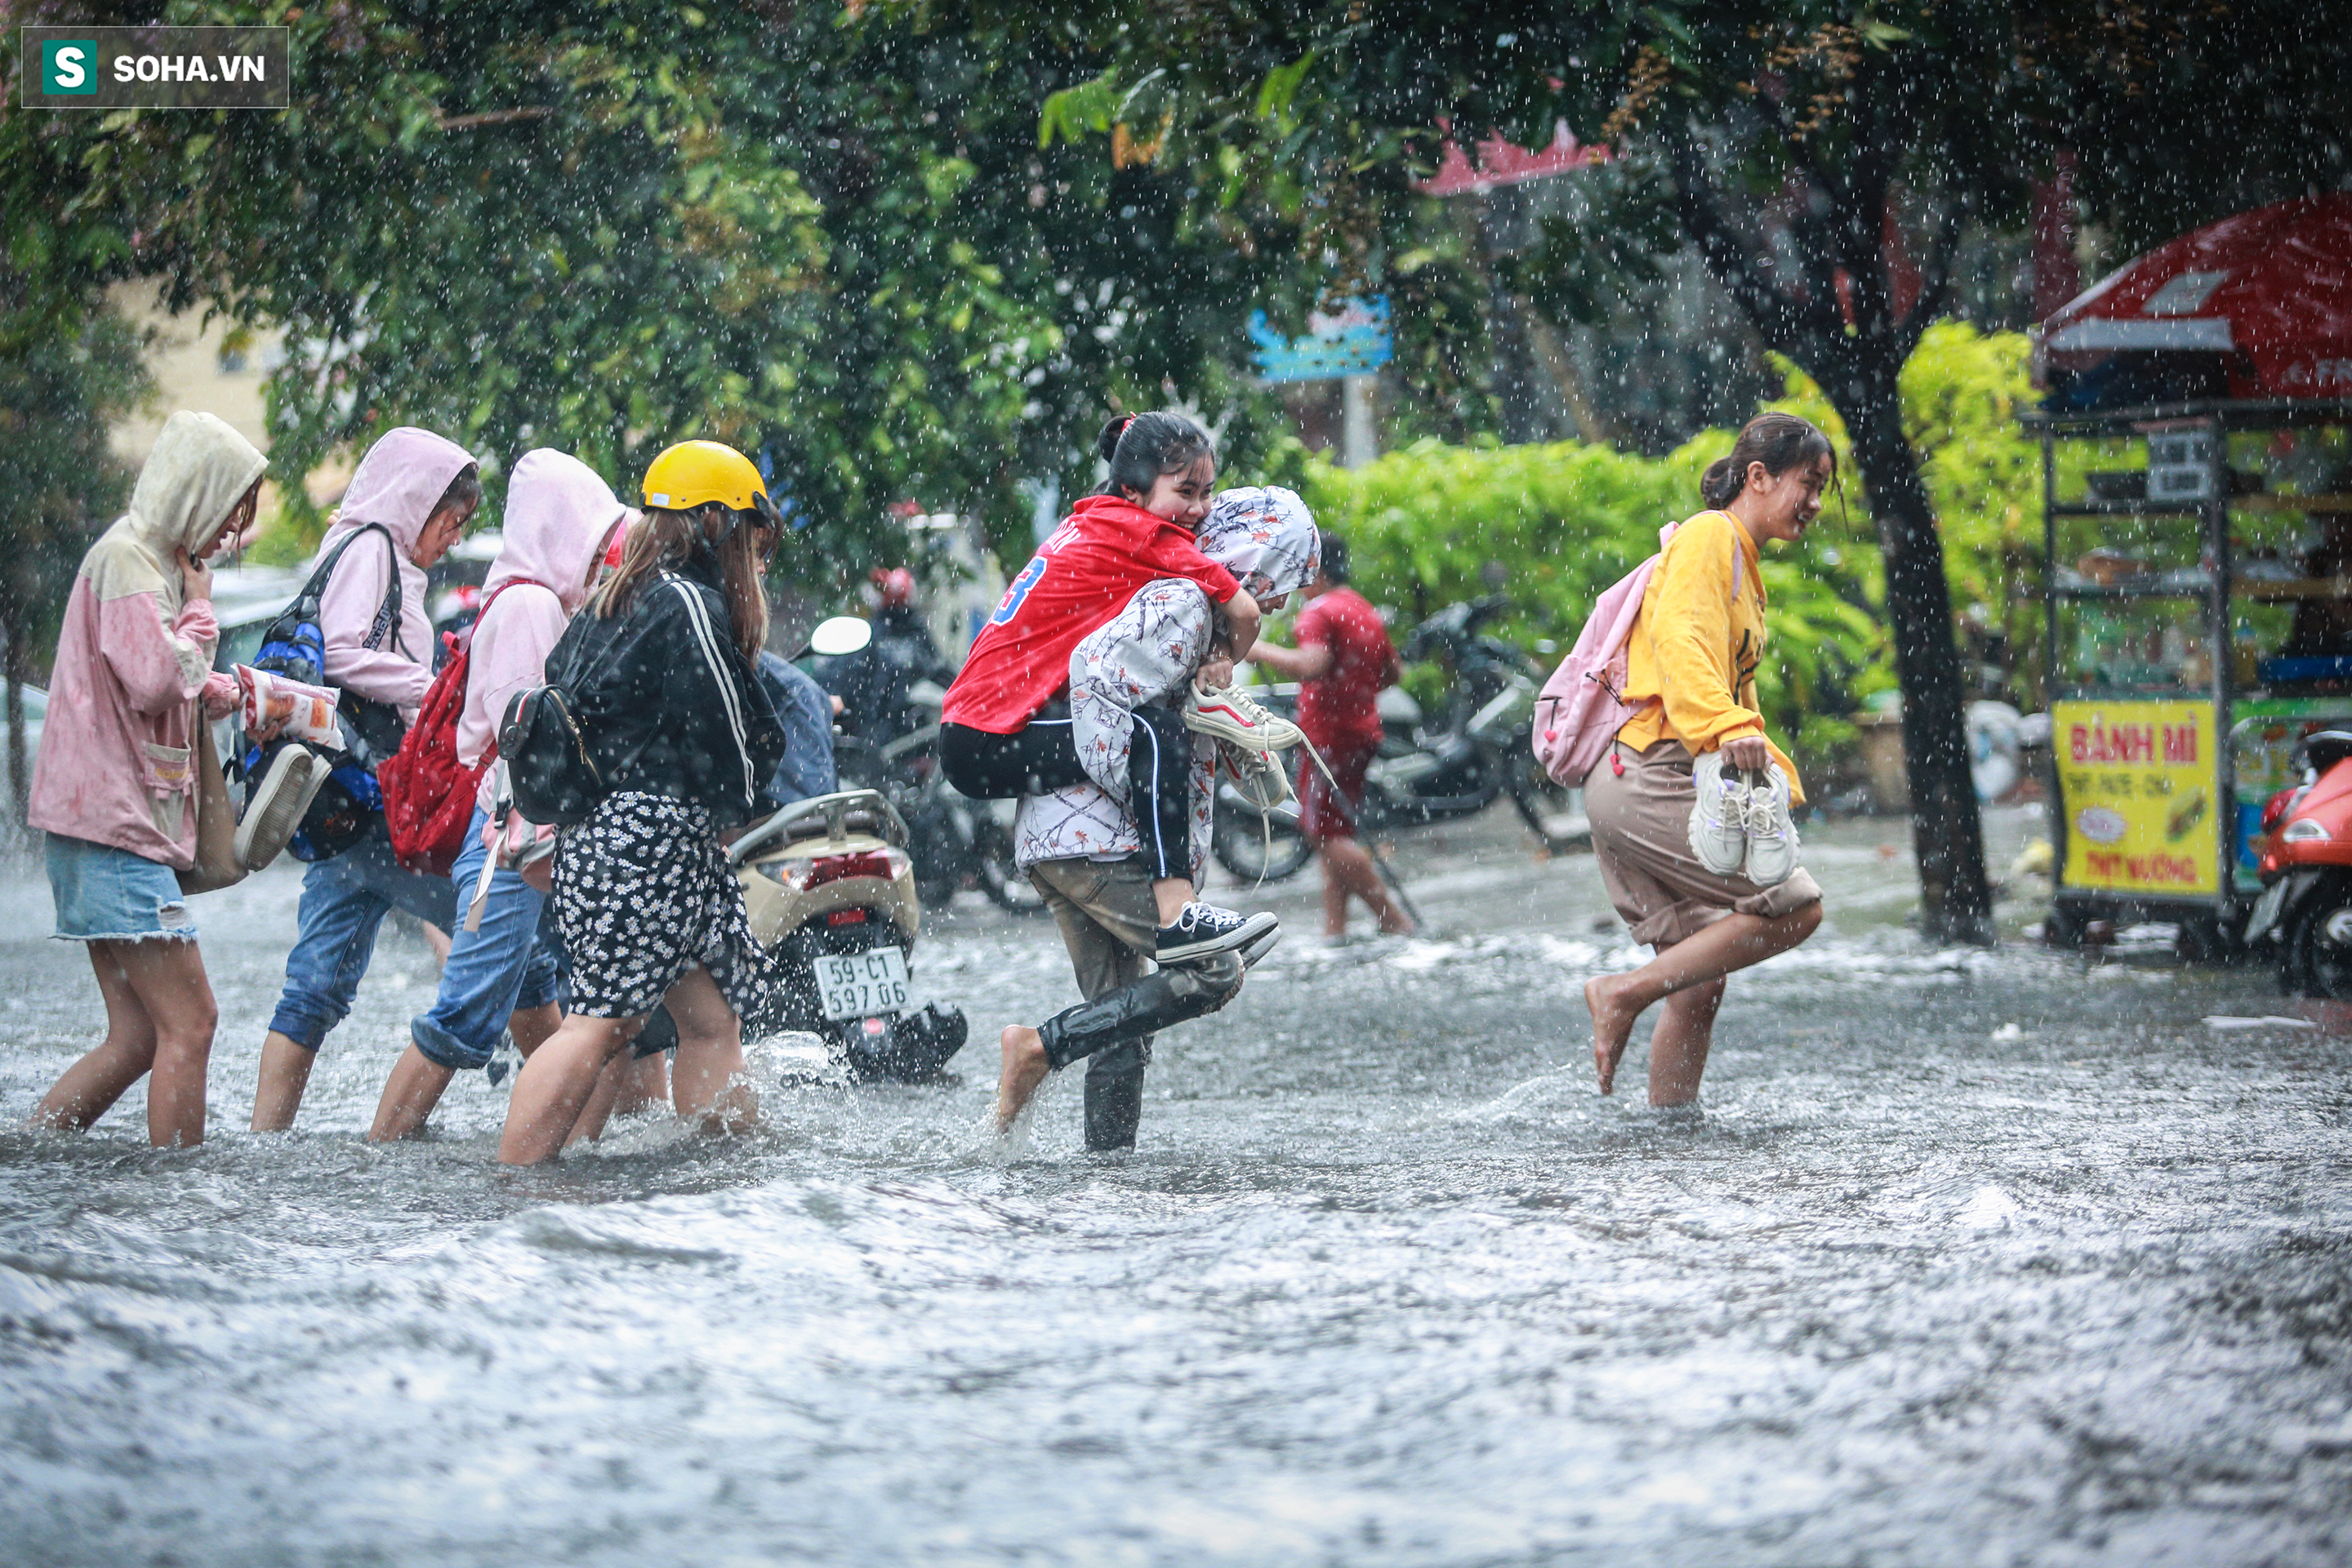 Người Sài Gòn ngã sõng soài trong mưa lớn, sinh viên cõng nhau dưới mưa qua biển nước Thảo Điền - Ảnh 5.